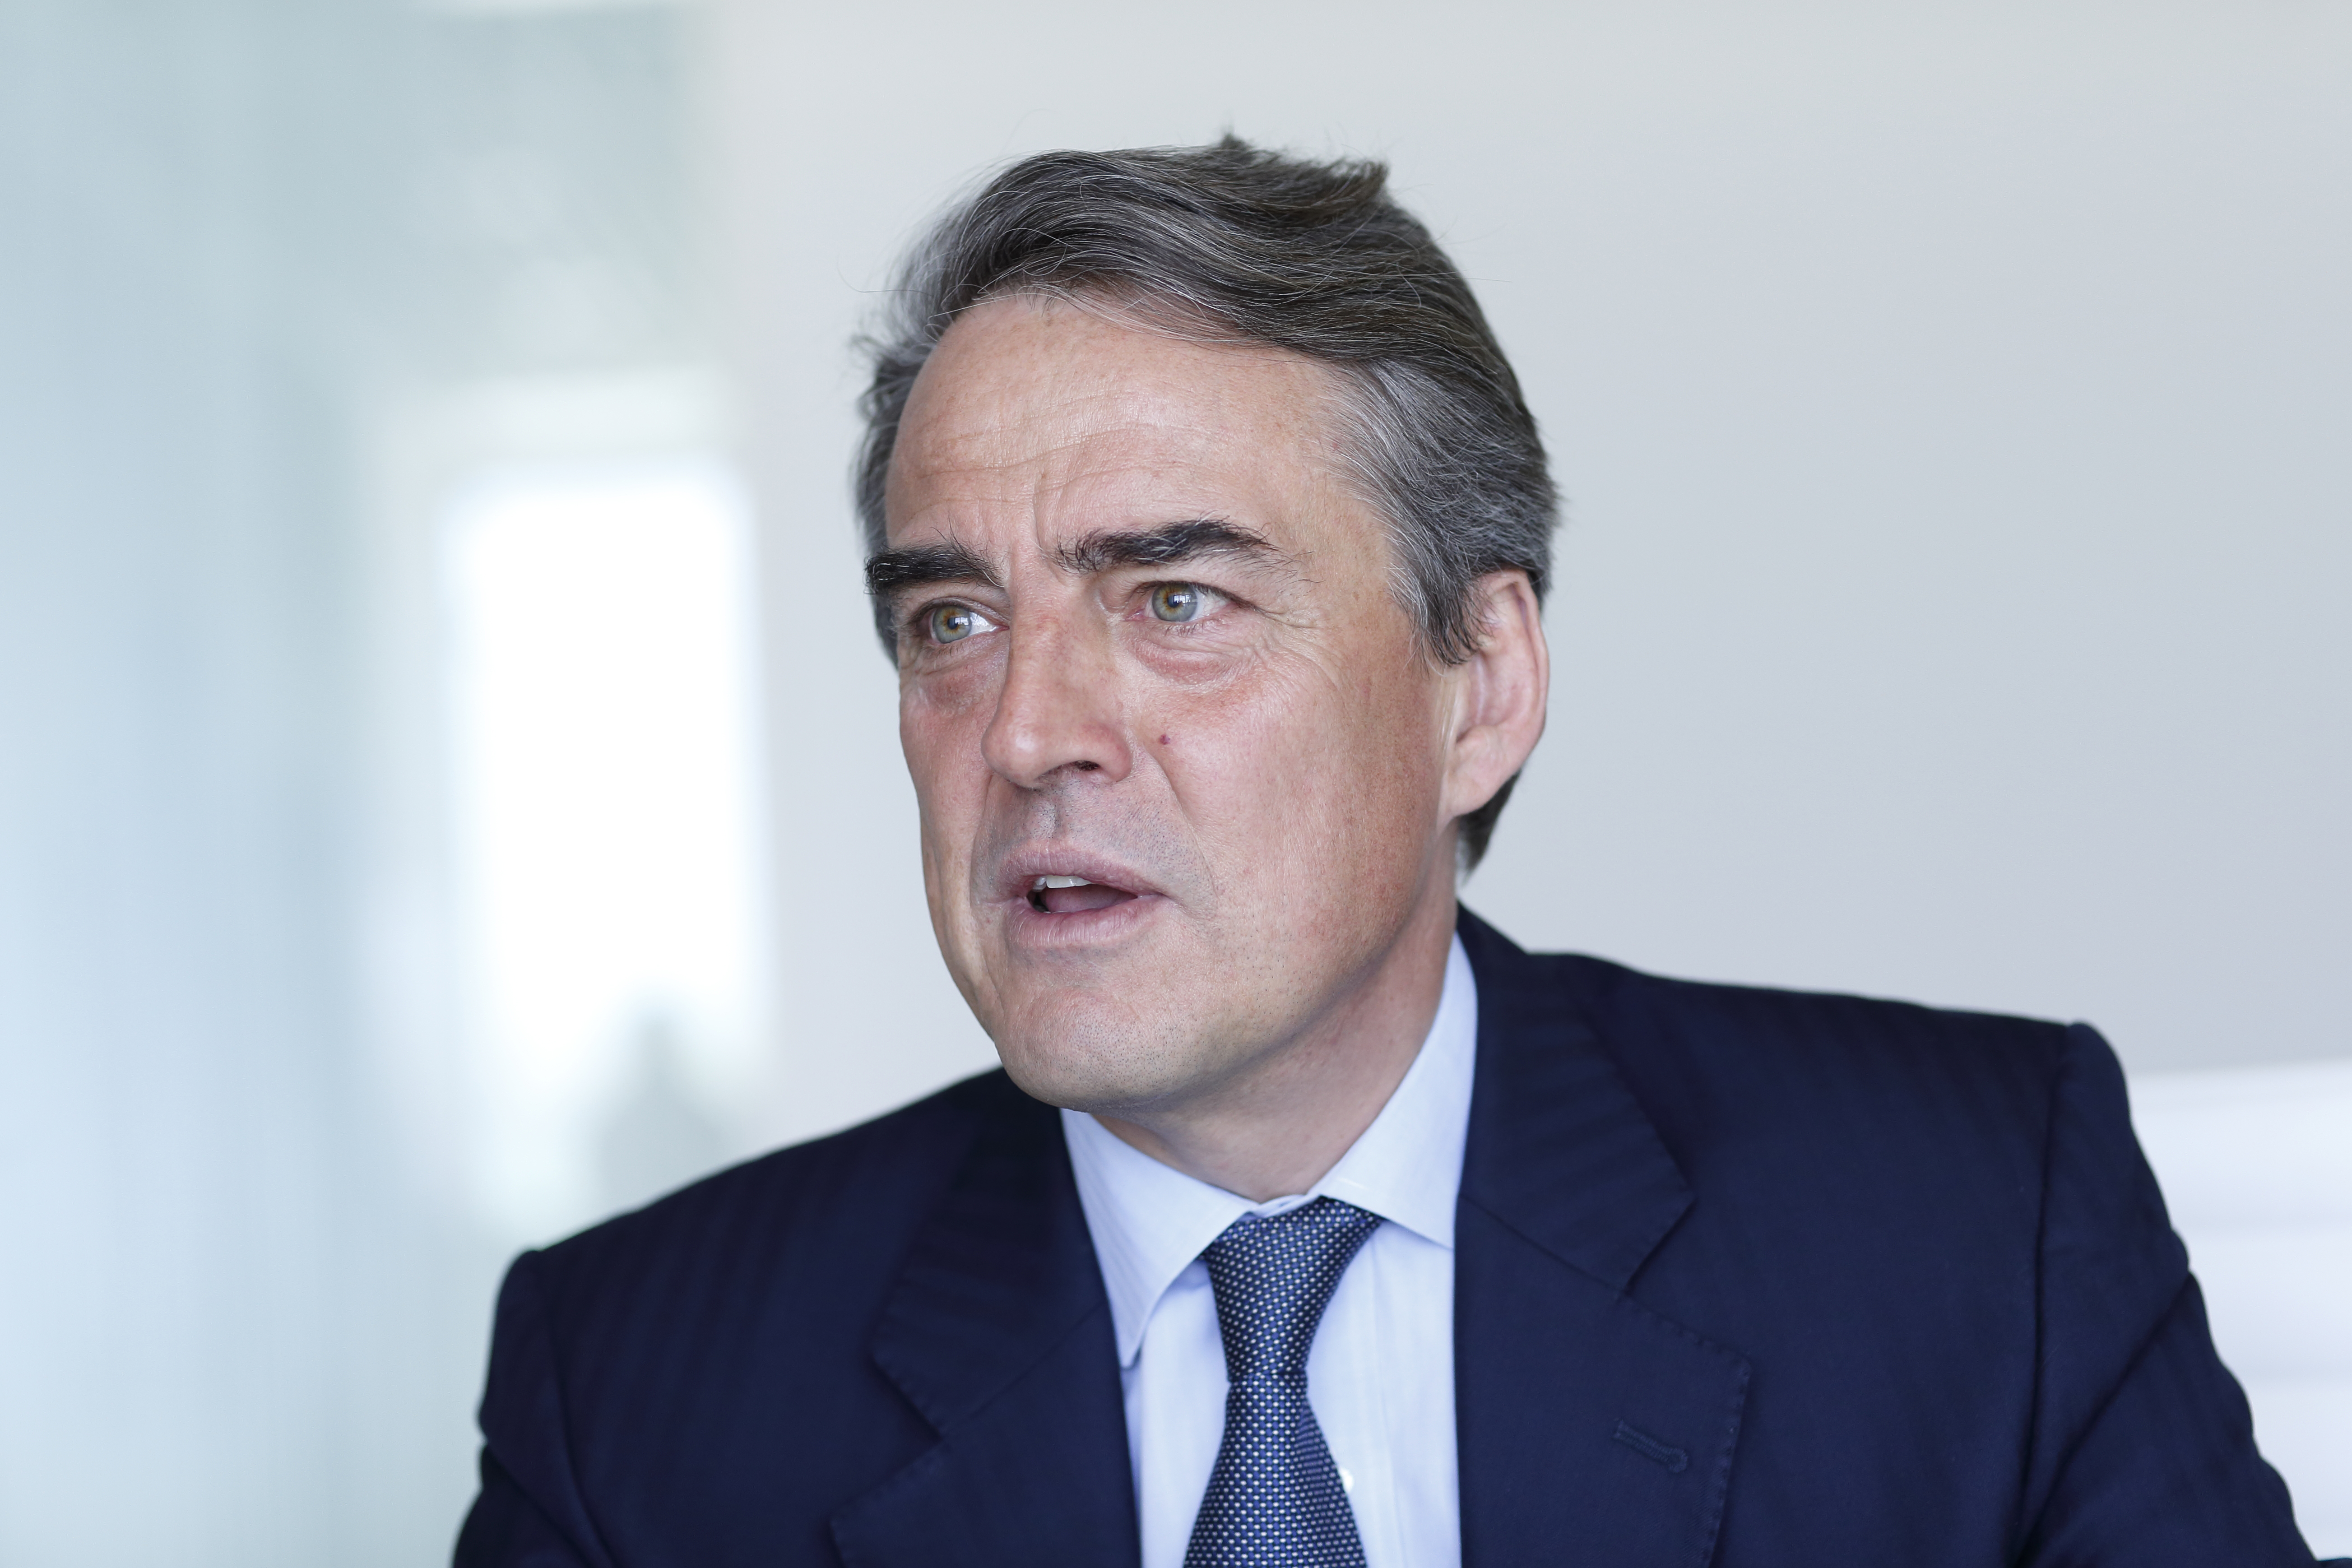 IATA Director General and CEO Alexandre de Juniac